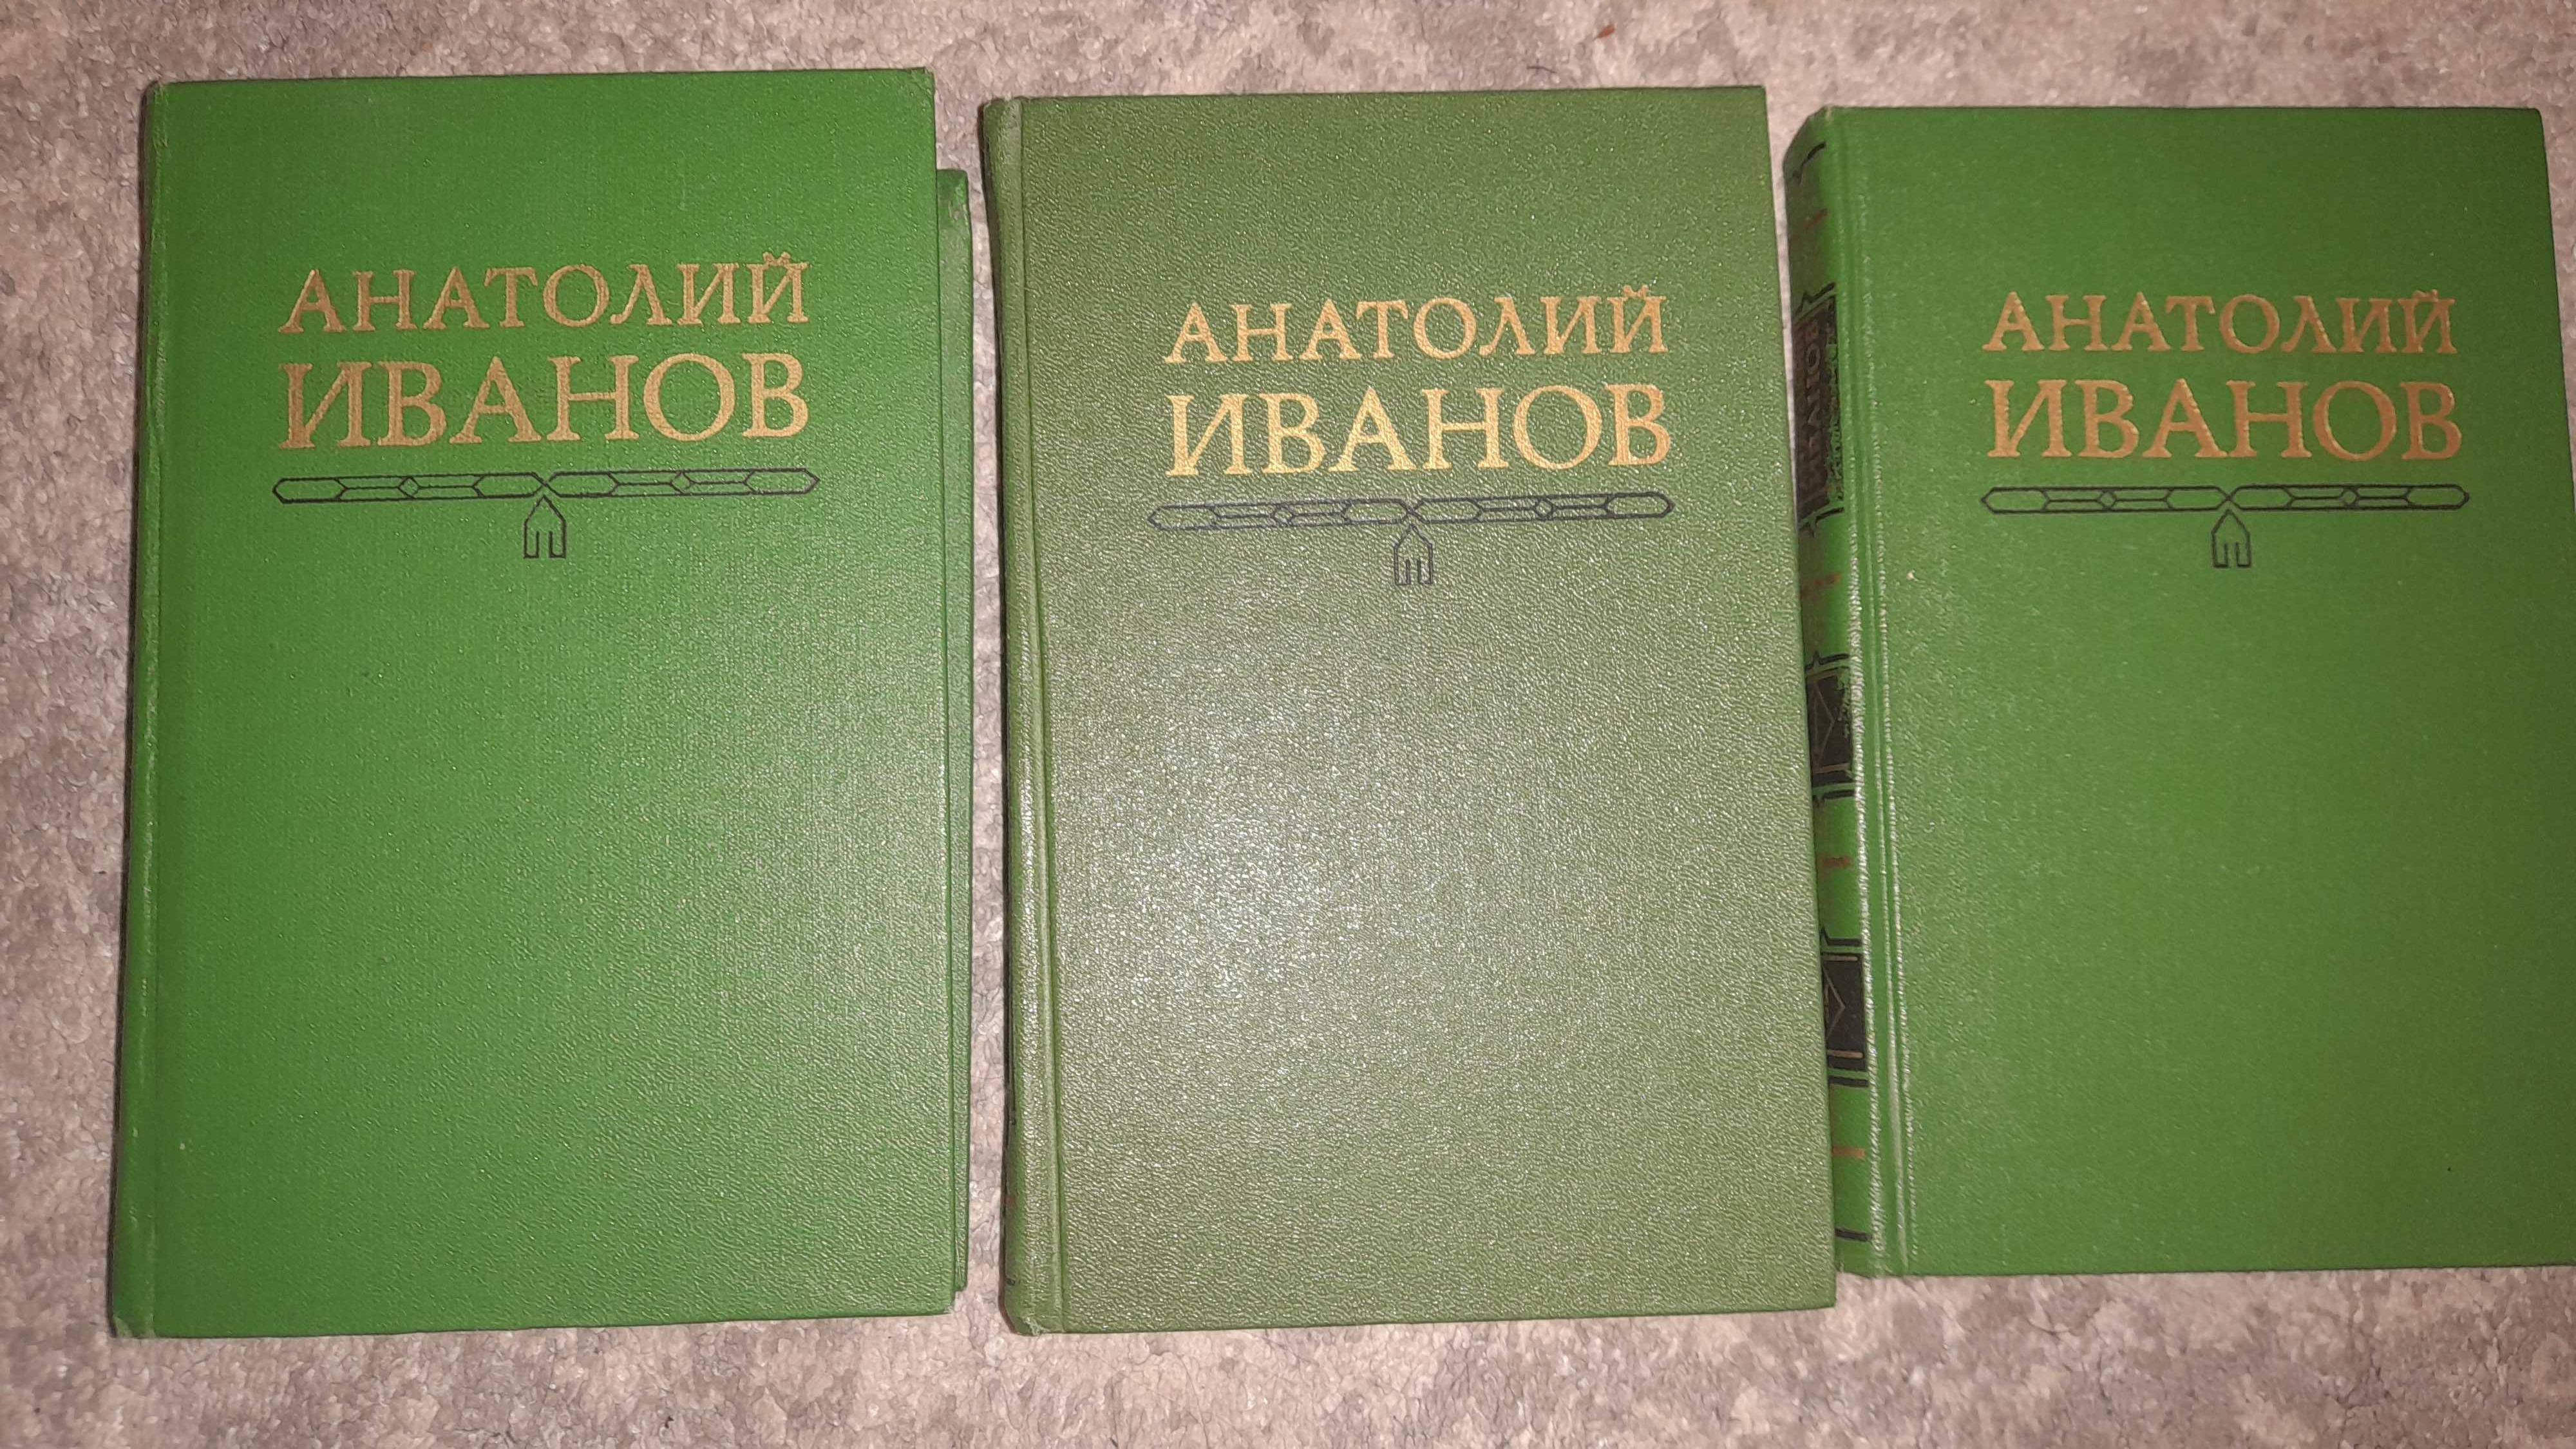 Иванов. А. Собрание сочинений в 5 т. (том 3, 4), 1979-1981